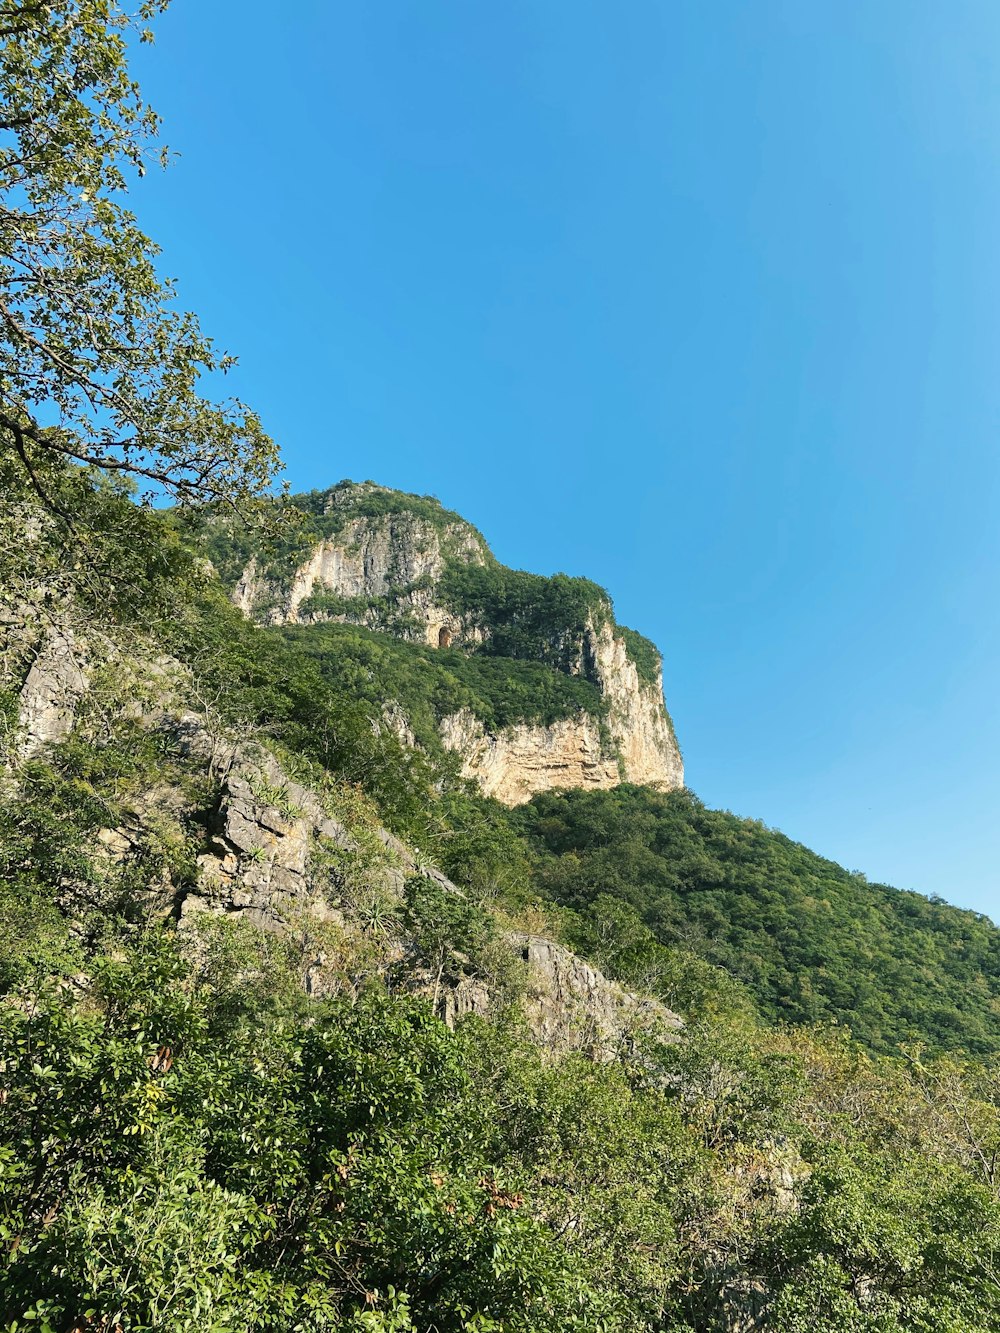 alberi verdi sulla montagna rocciosa sotto il cielo blu durante il giorno